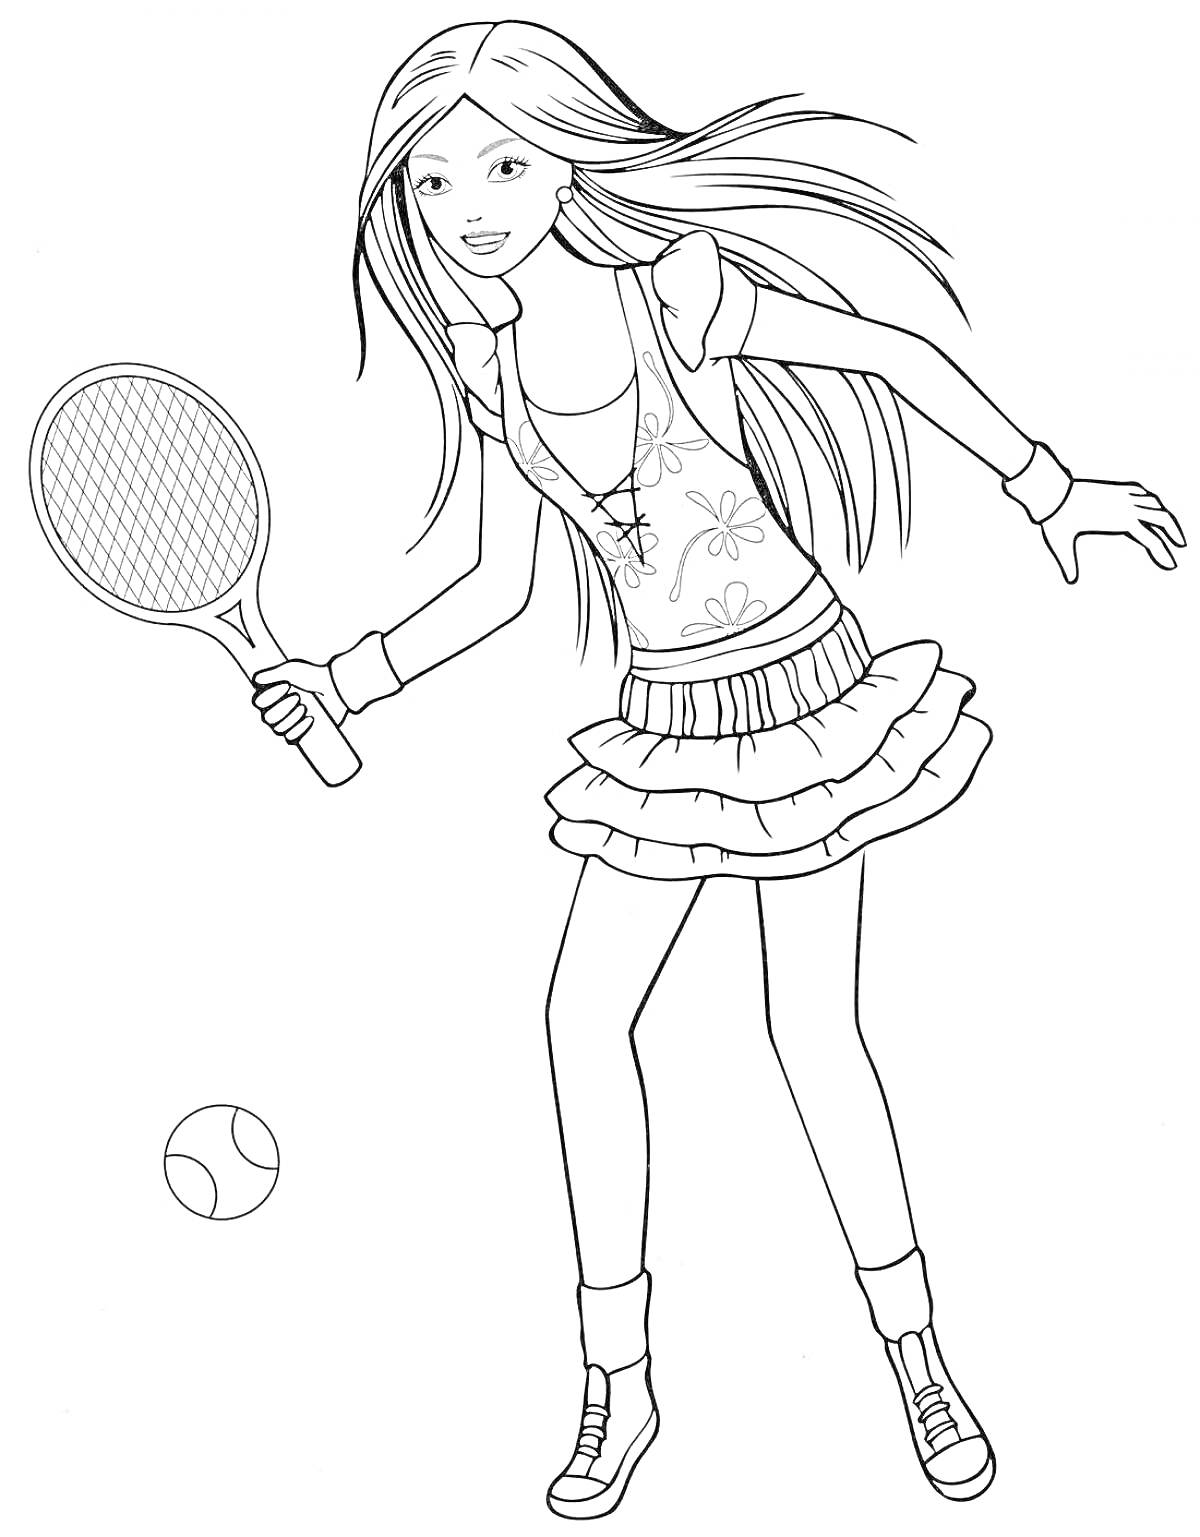 Девушка с длинными волосами, играющая в теннис, с ракеткой и мячом.